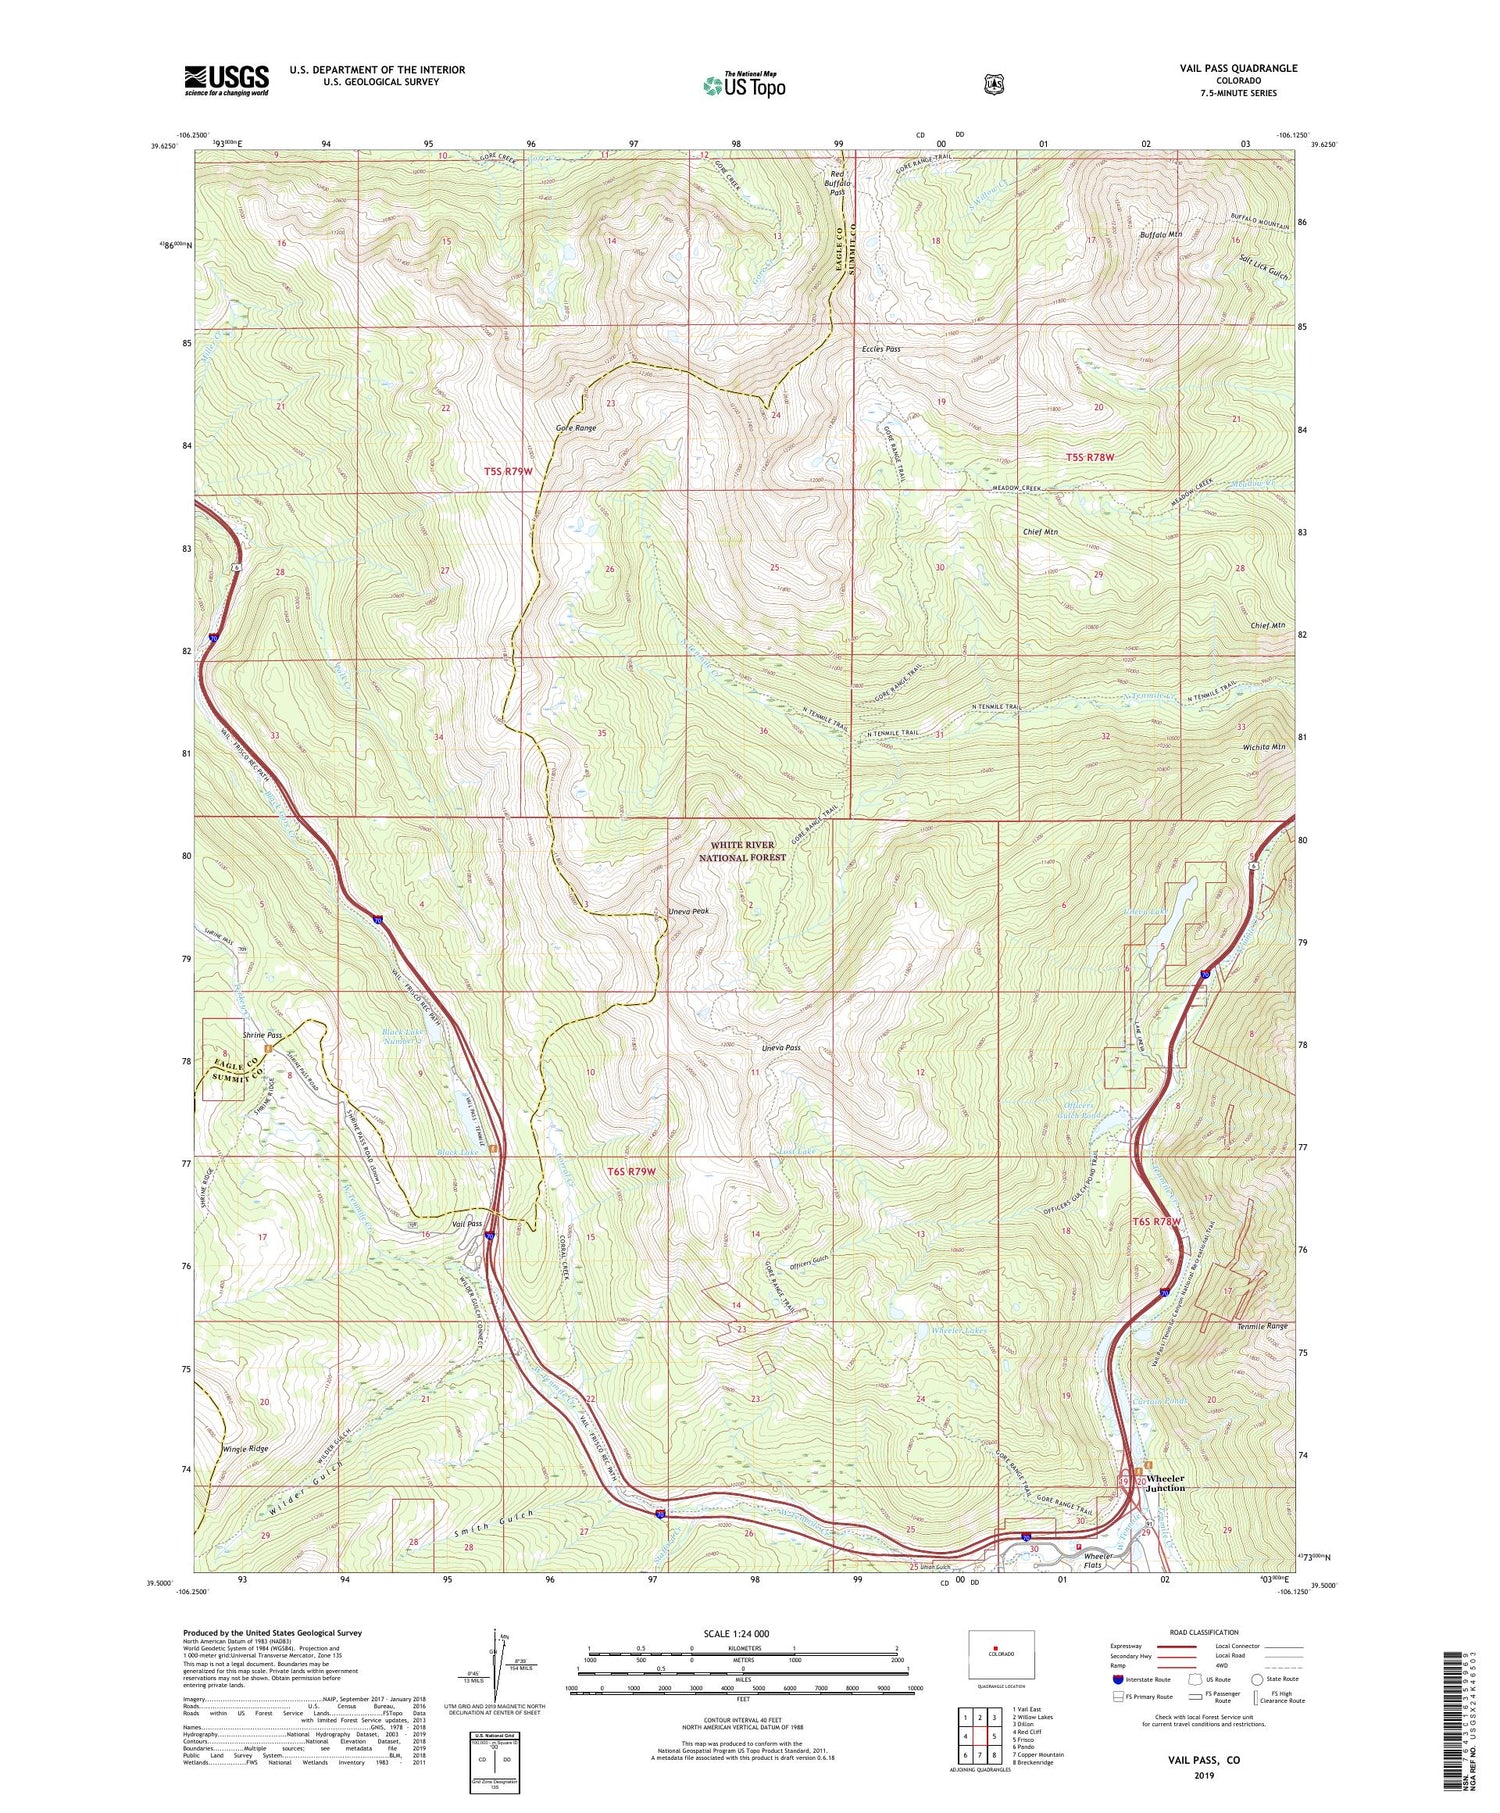 Vail Pass Colorado US Topo Map Image